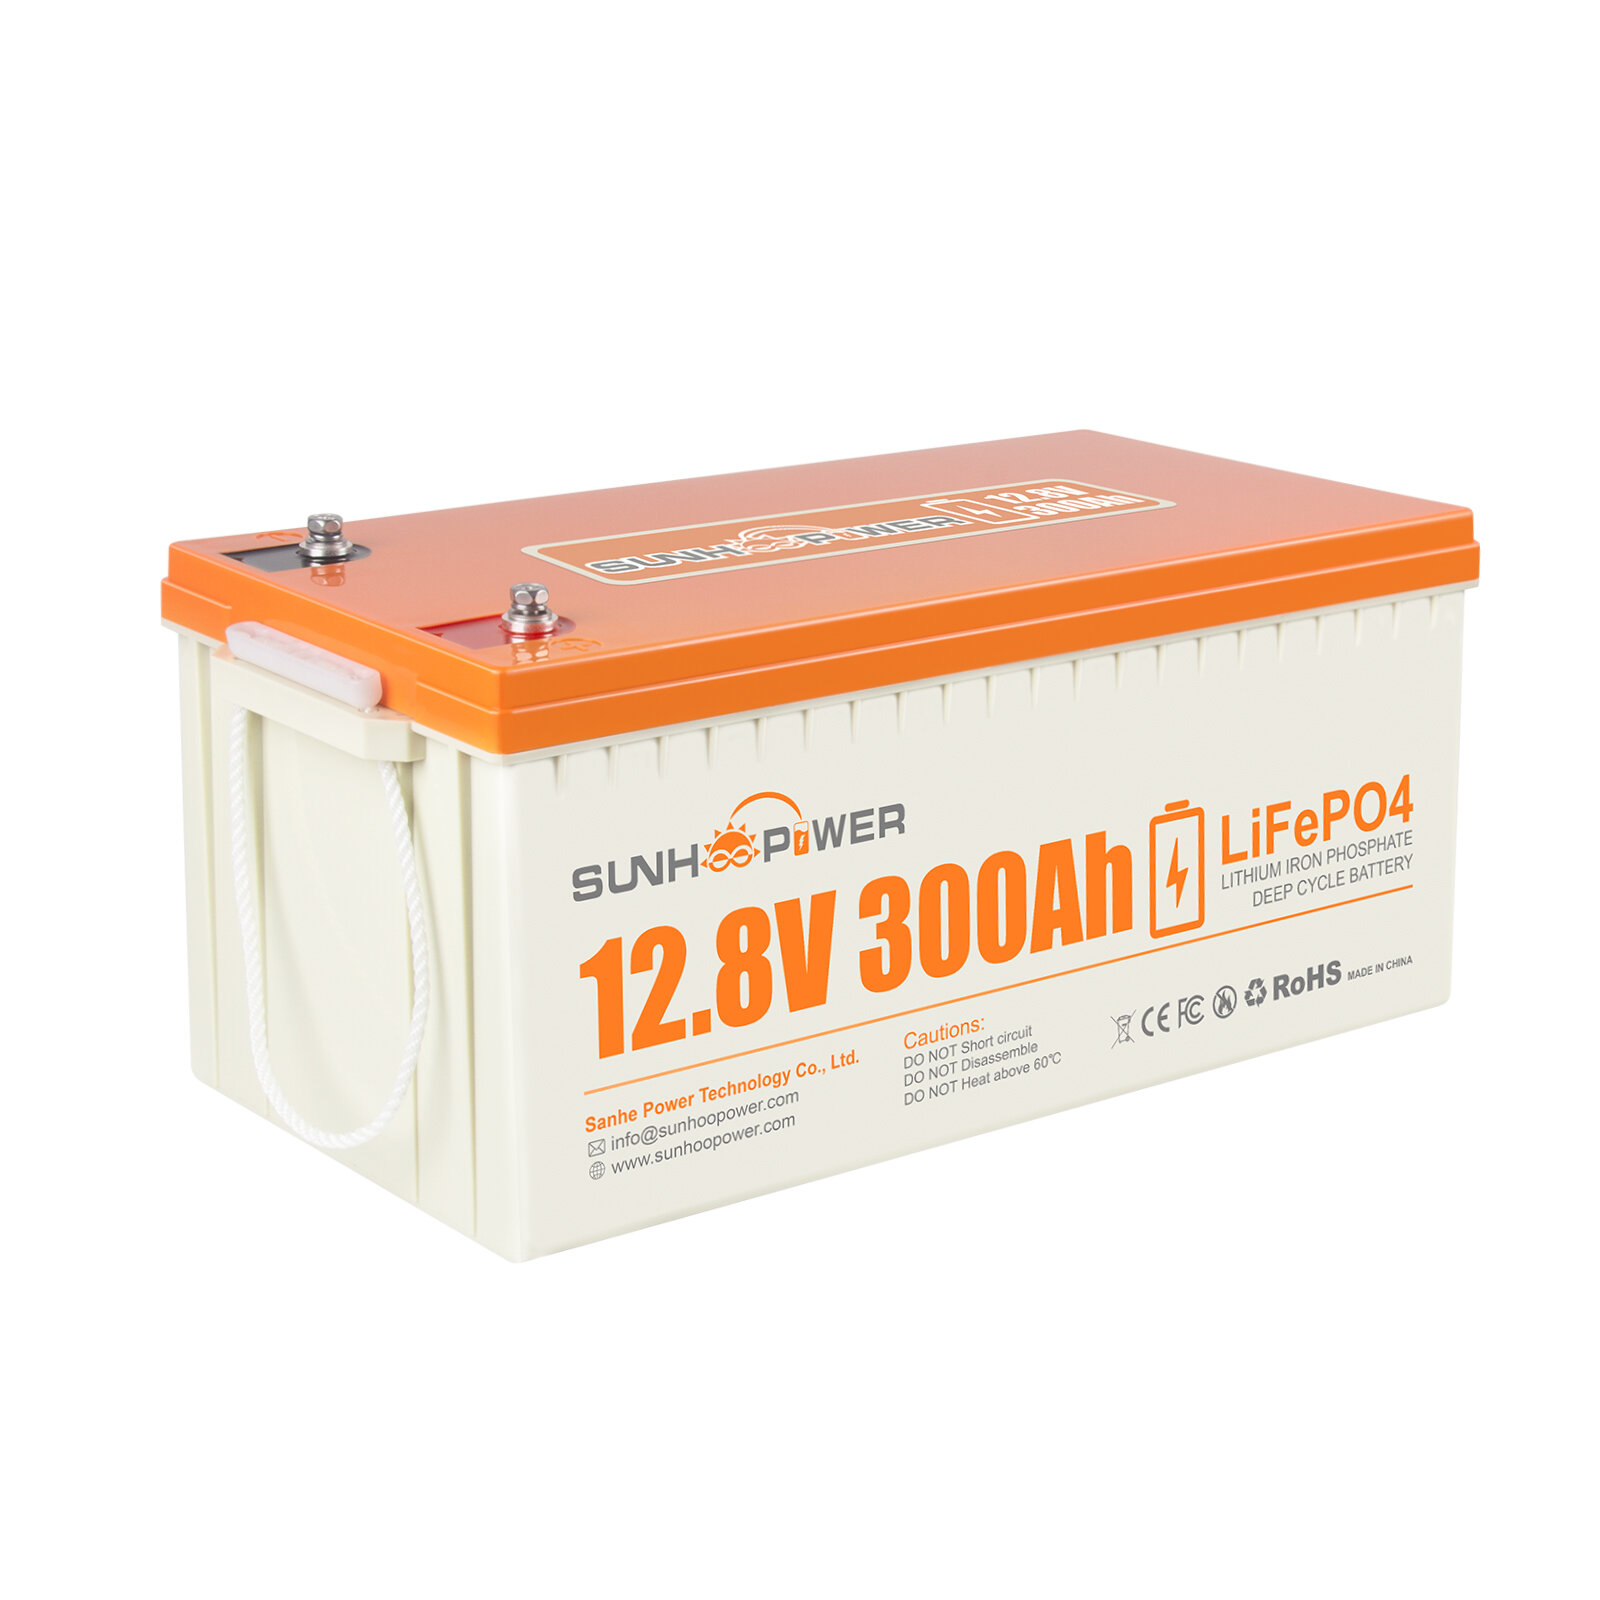 [UE Direct] Bateria de lítio recarregável SUNHOOPOWER 12V 300AH LiFePO4, 2560Wh bateria de lítio recarregável com BMS integrado de 200A, autodescarga, perfeita para RV, marinha, armazenamento de energia, energia de backup off-grid.